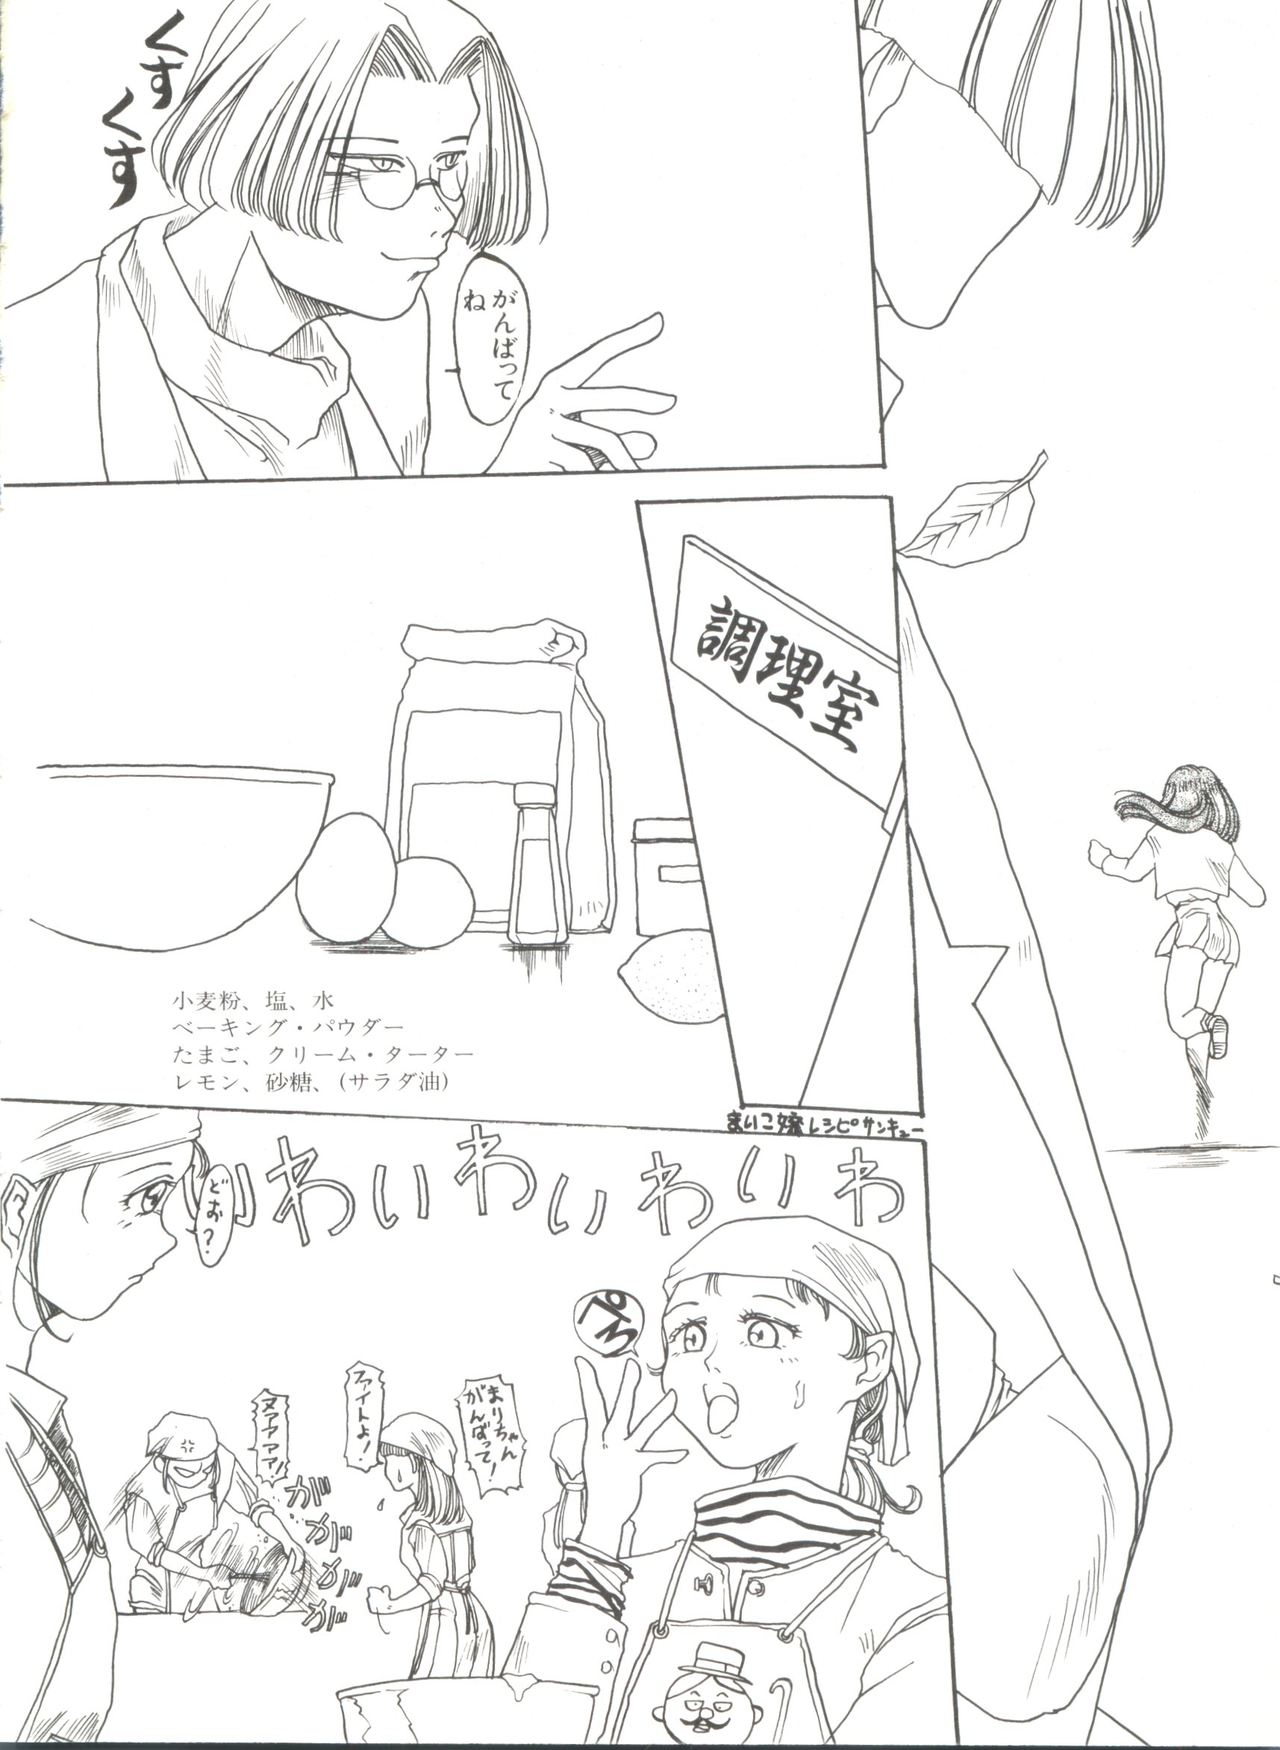 [Anthology] Bishoujo Doujinshi Anthology 4 (Various) page 40 full